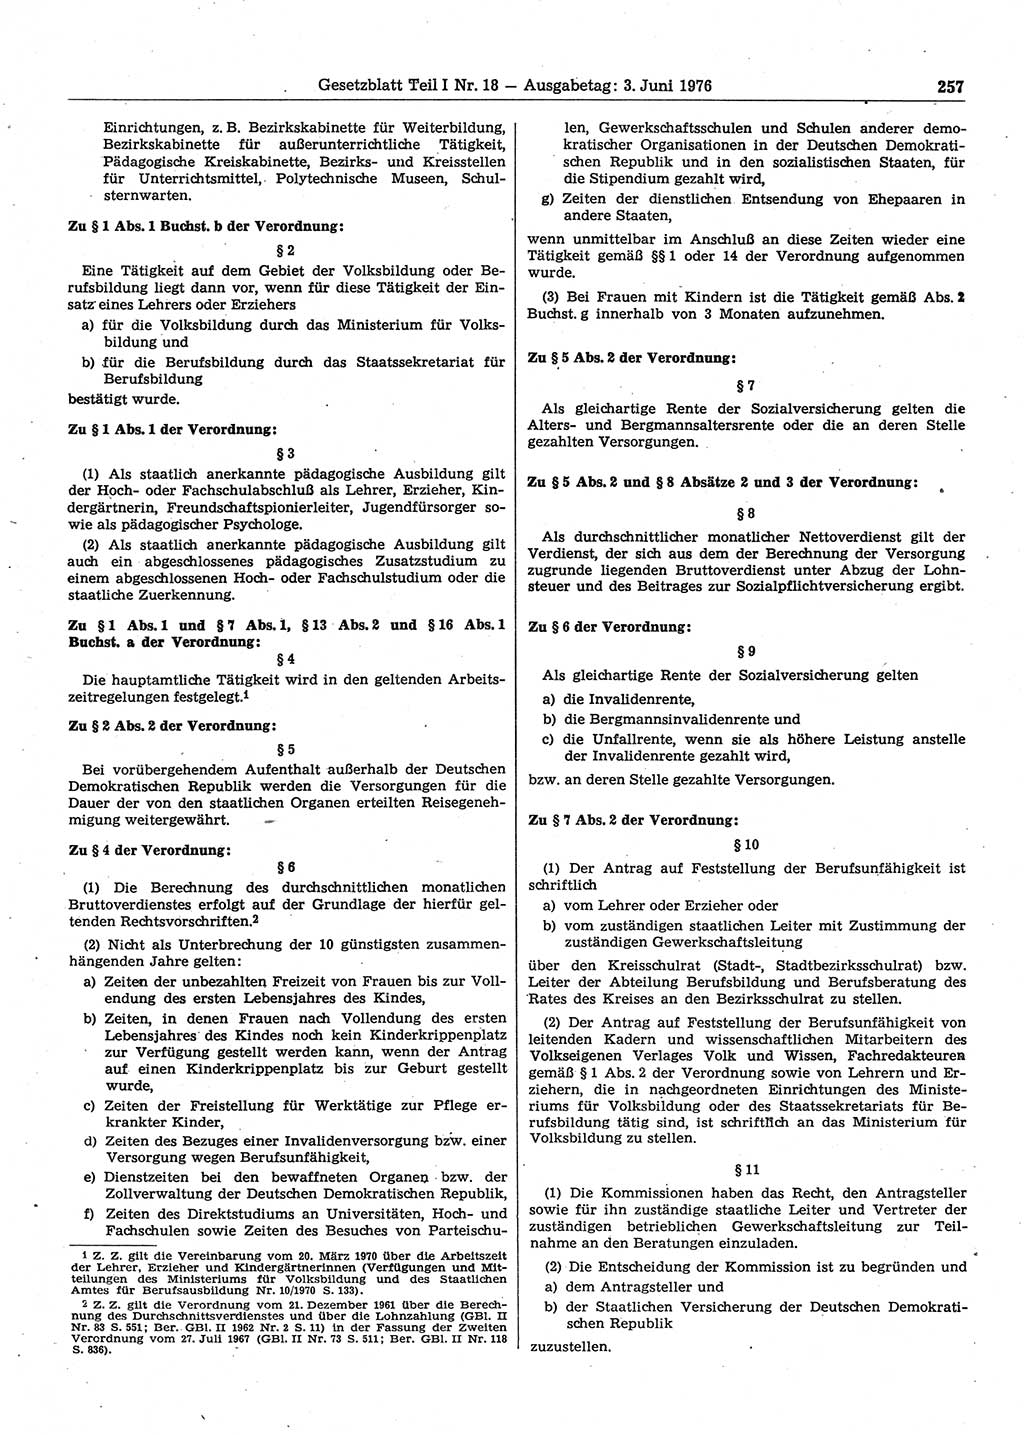 Gesetzblatt (GBl.) der Deutschen Demokratischen Republik (DDR) Teil Ⅰ 1976, Seite 257 (GBl. DDR Ⅰ 1976, S. 257)